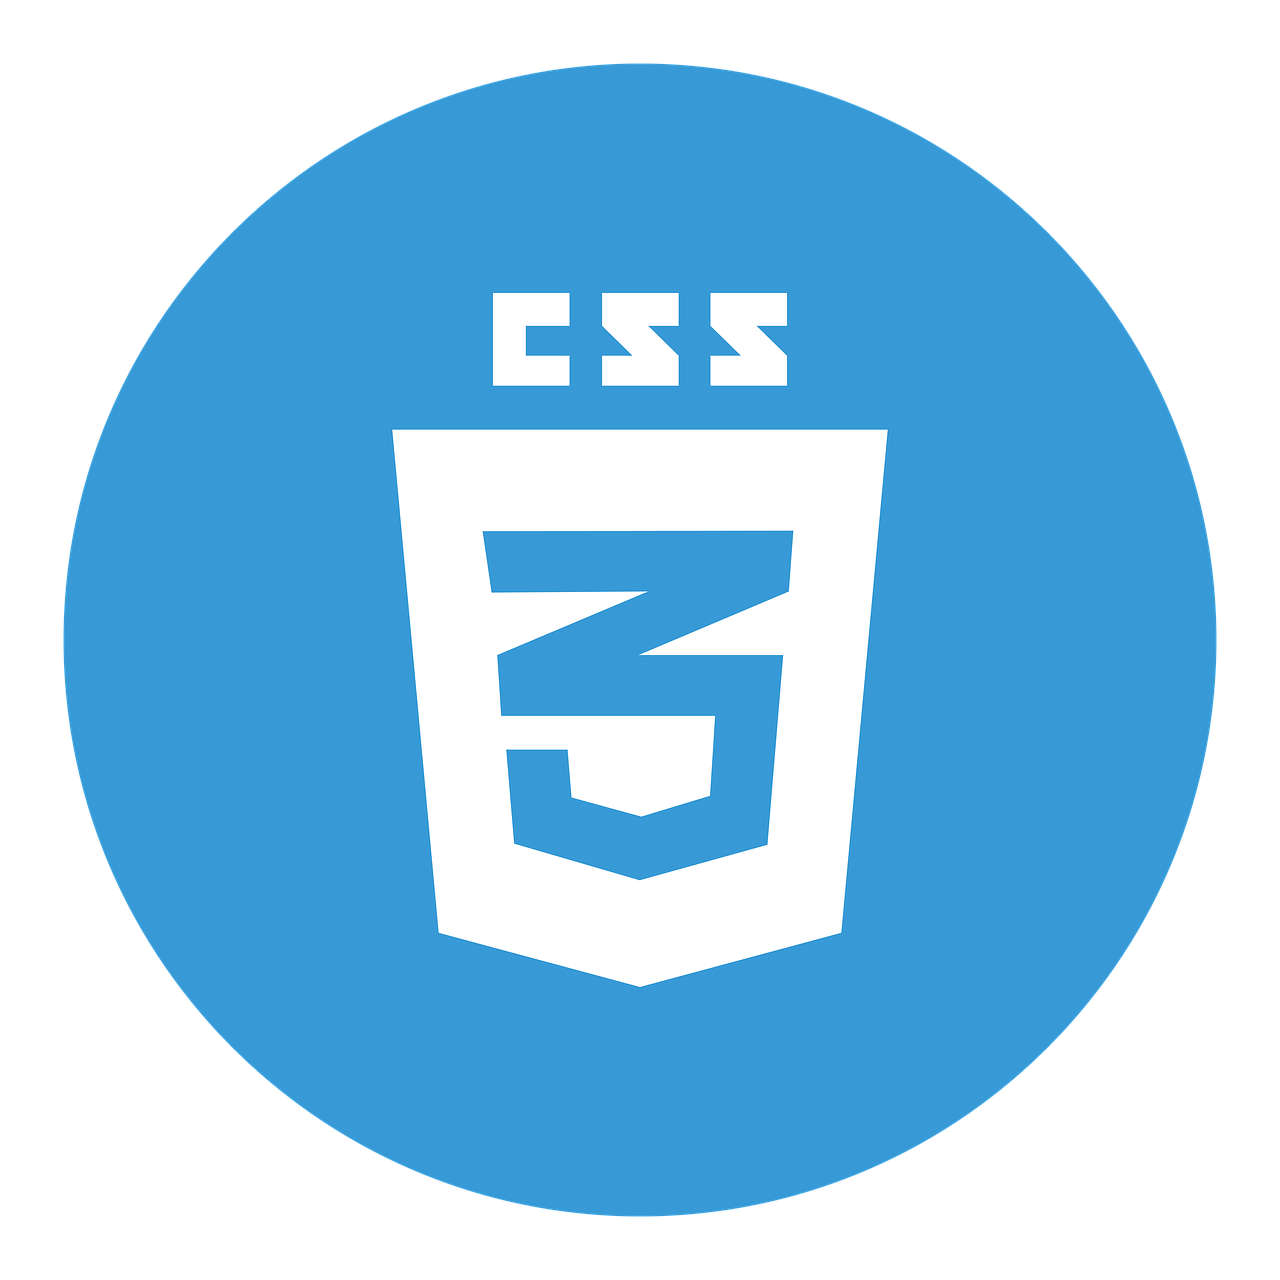 An HTML5 logo